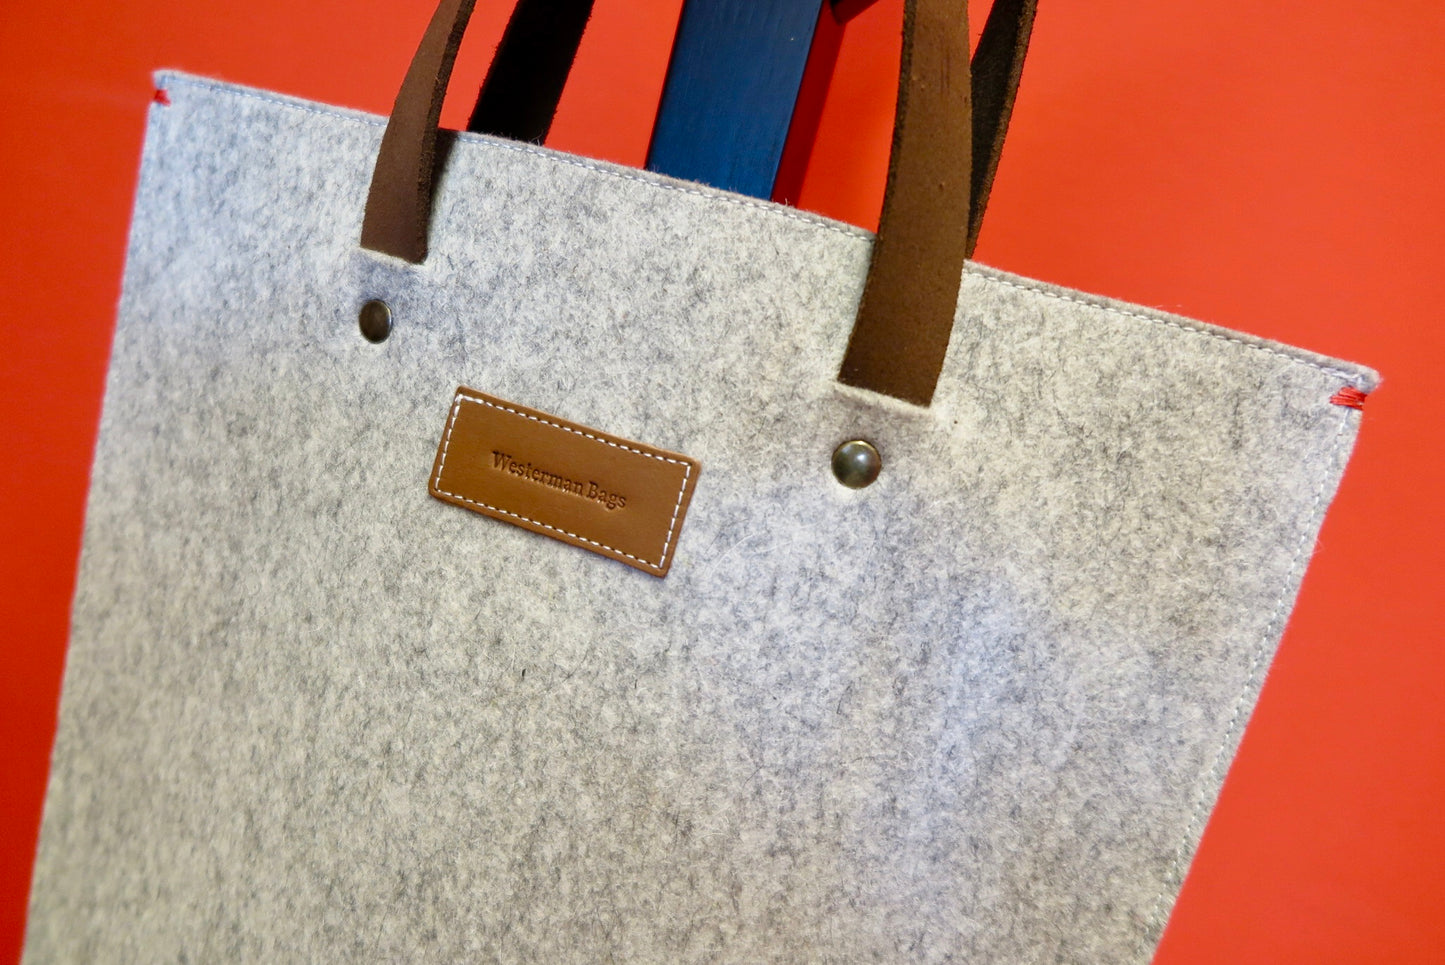 SOLD OUT - GRIFT tas in grijs vilt laptoptas - pure wol - minimalistisch ontwerp - natuurlijke materialen - Westerman Bags vilten tassen en hoezen. Dutch Design.